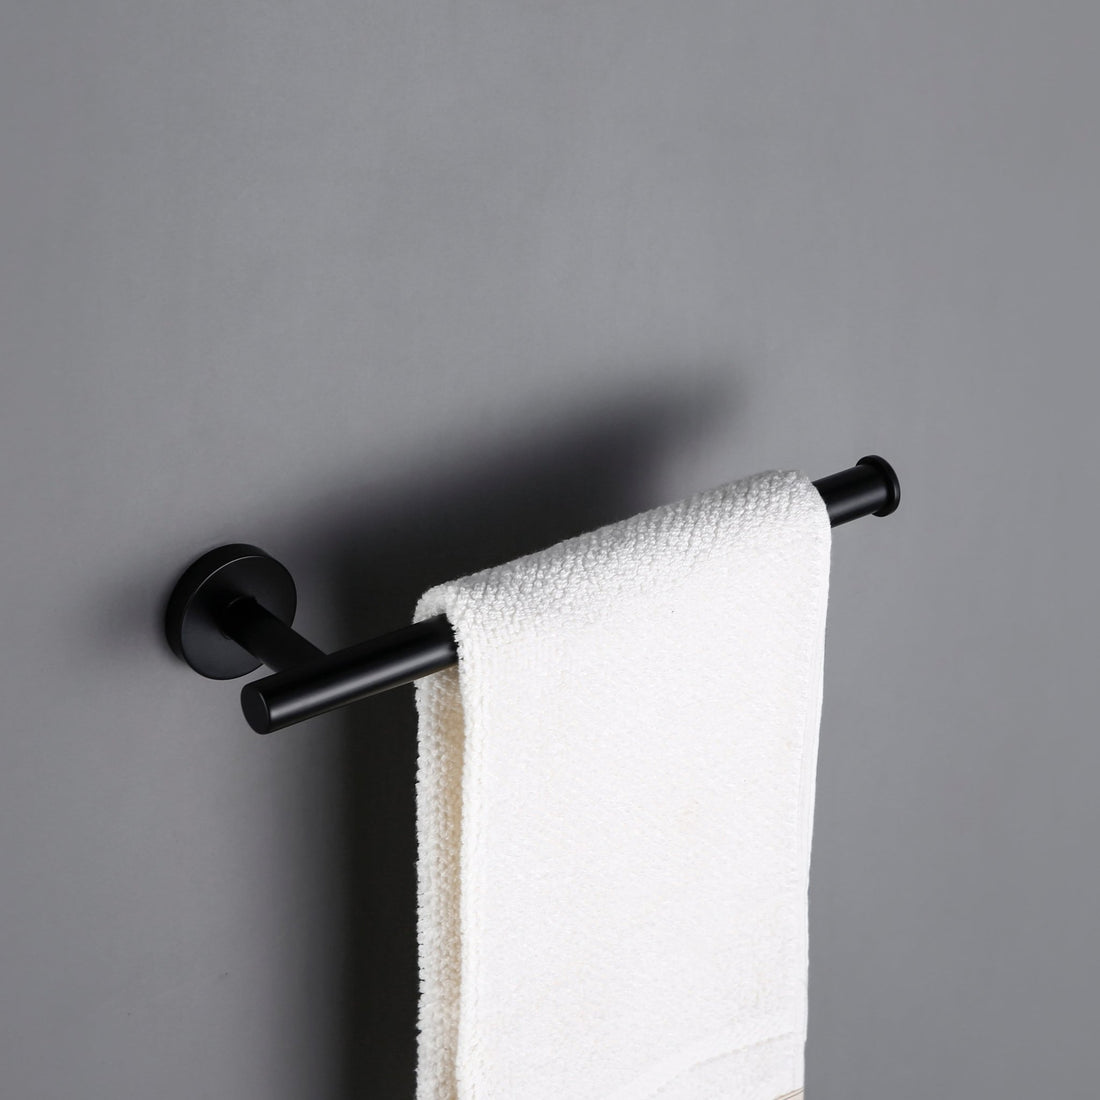 KOL Hand Towel Rail - meraki.